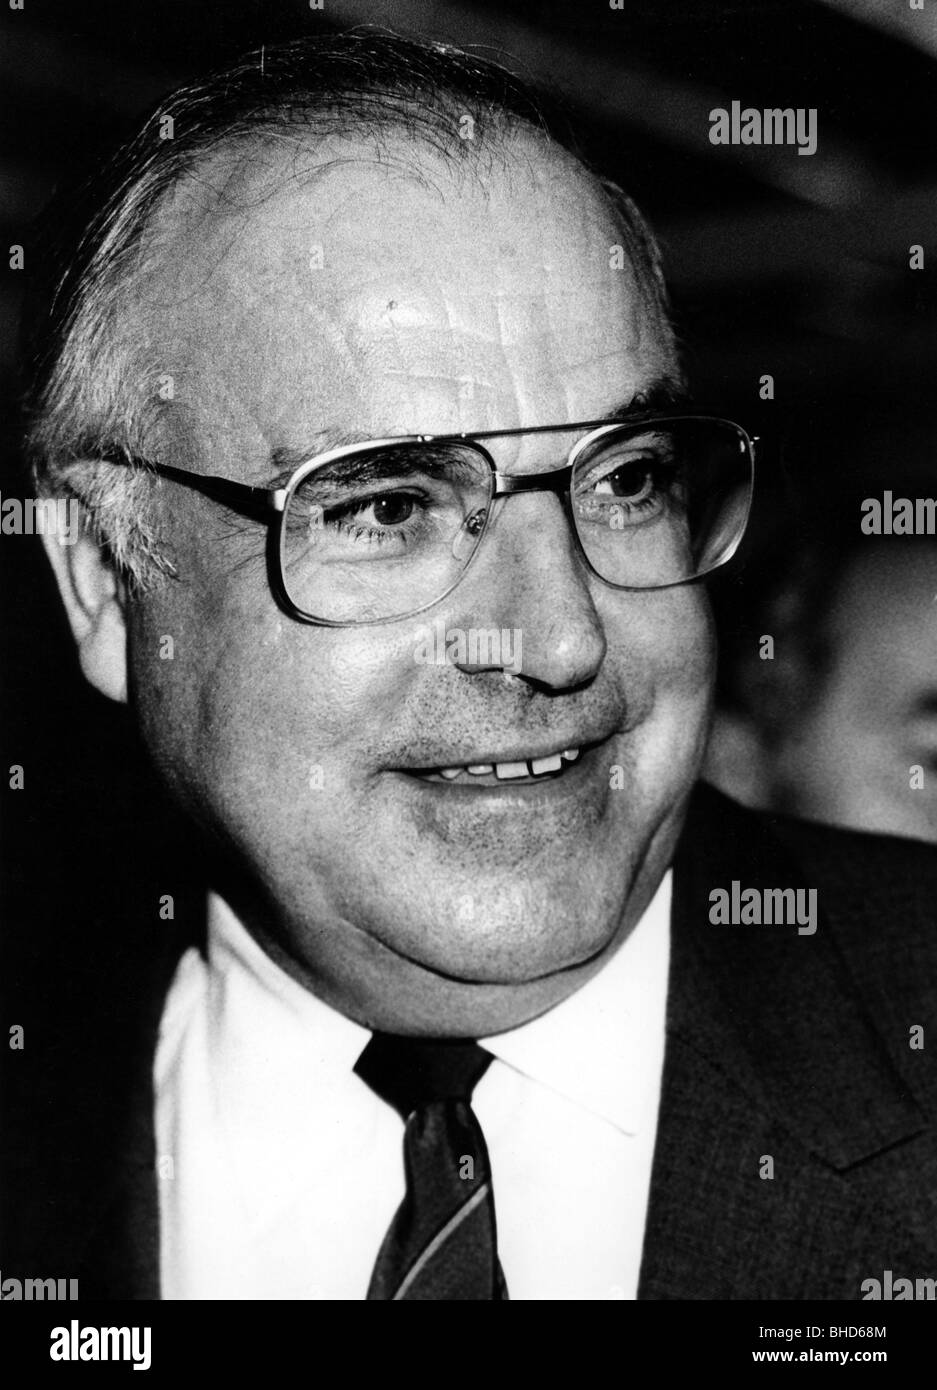 Kohl, Helmut, * 3.4.1930, deutscher Politiker (CDU), Bundeskanzler 4.10.1982 - 26.10.1998, Porträt, 1985, Stockfoto